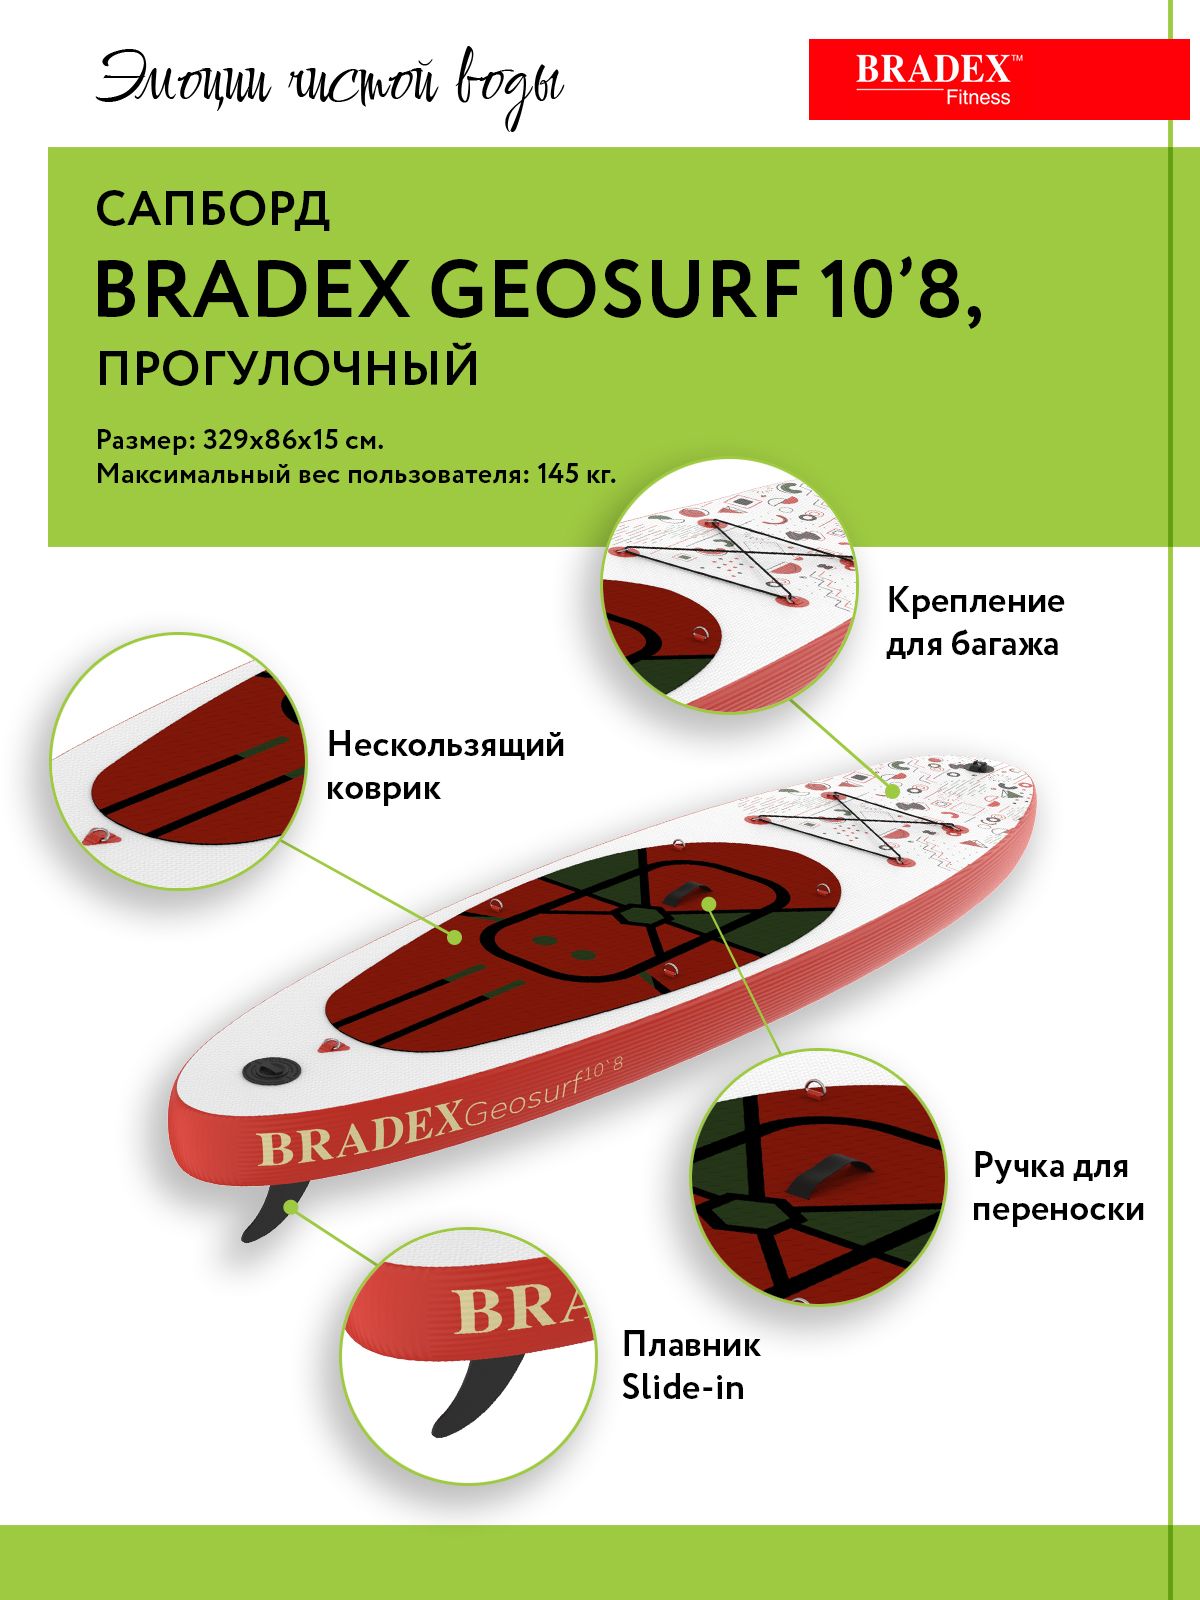 Сапборд Bradex Geosurf 10’8, прогулочный